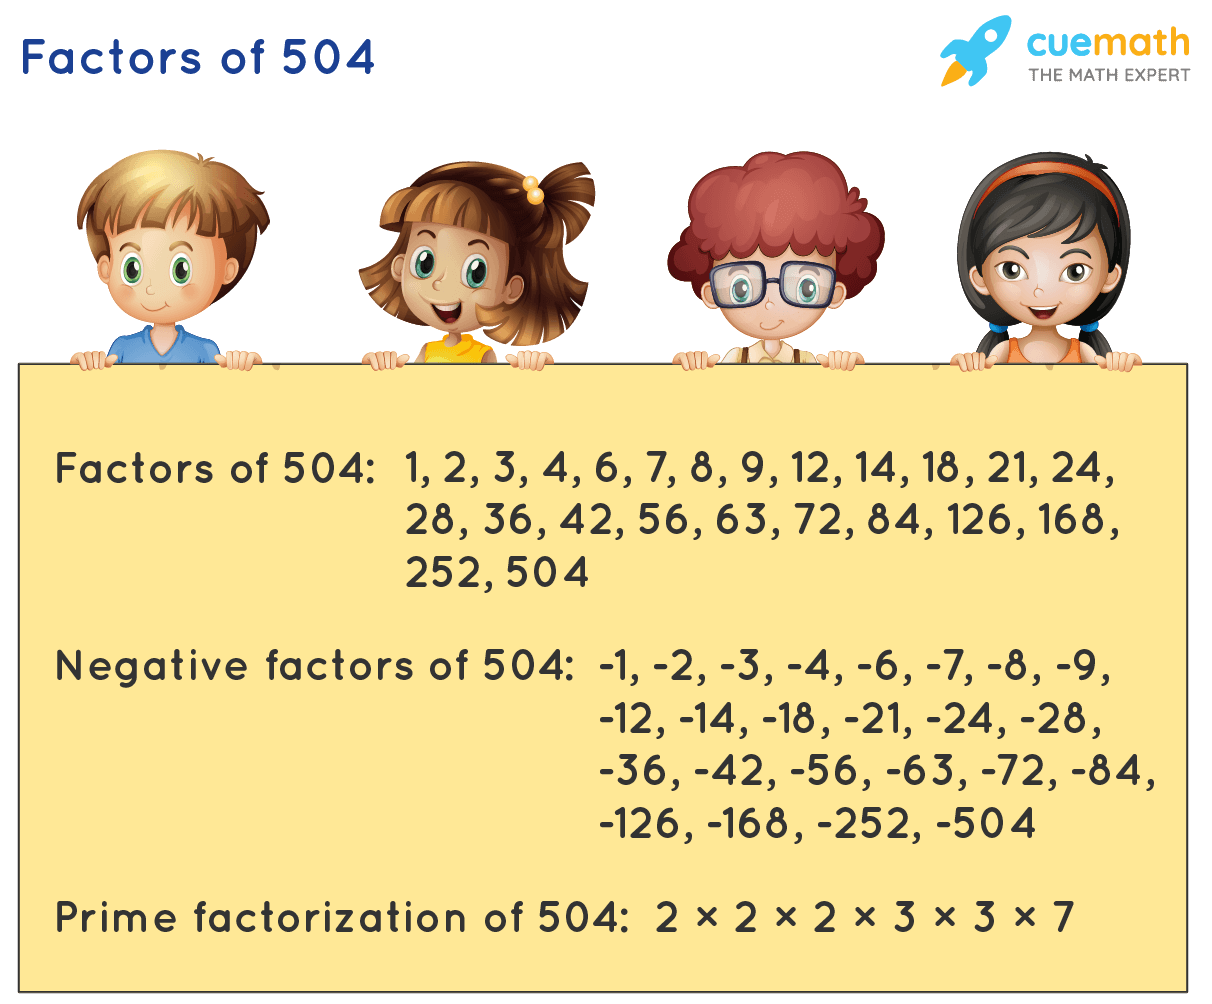 Factors of 504